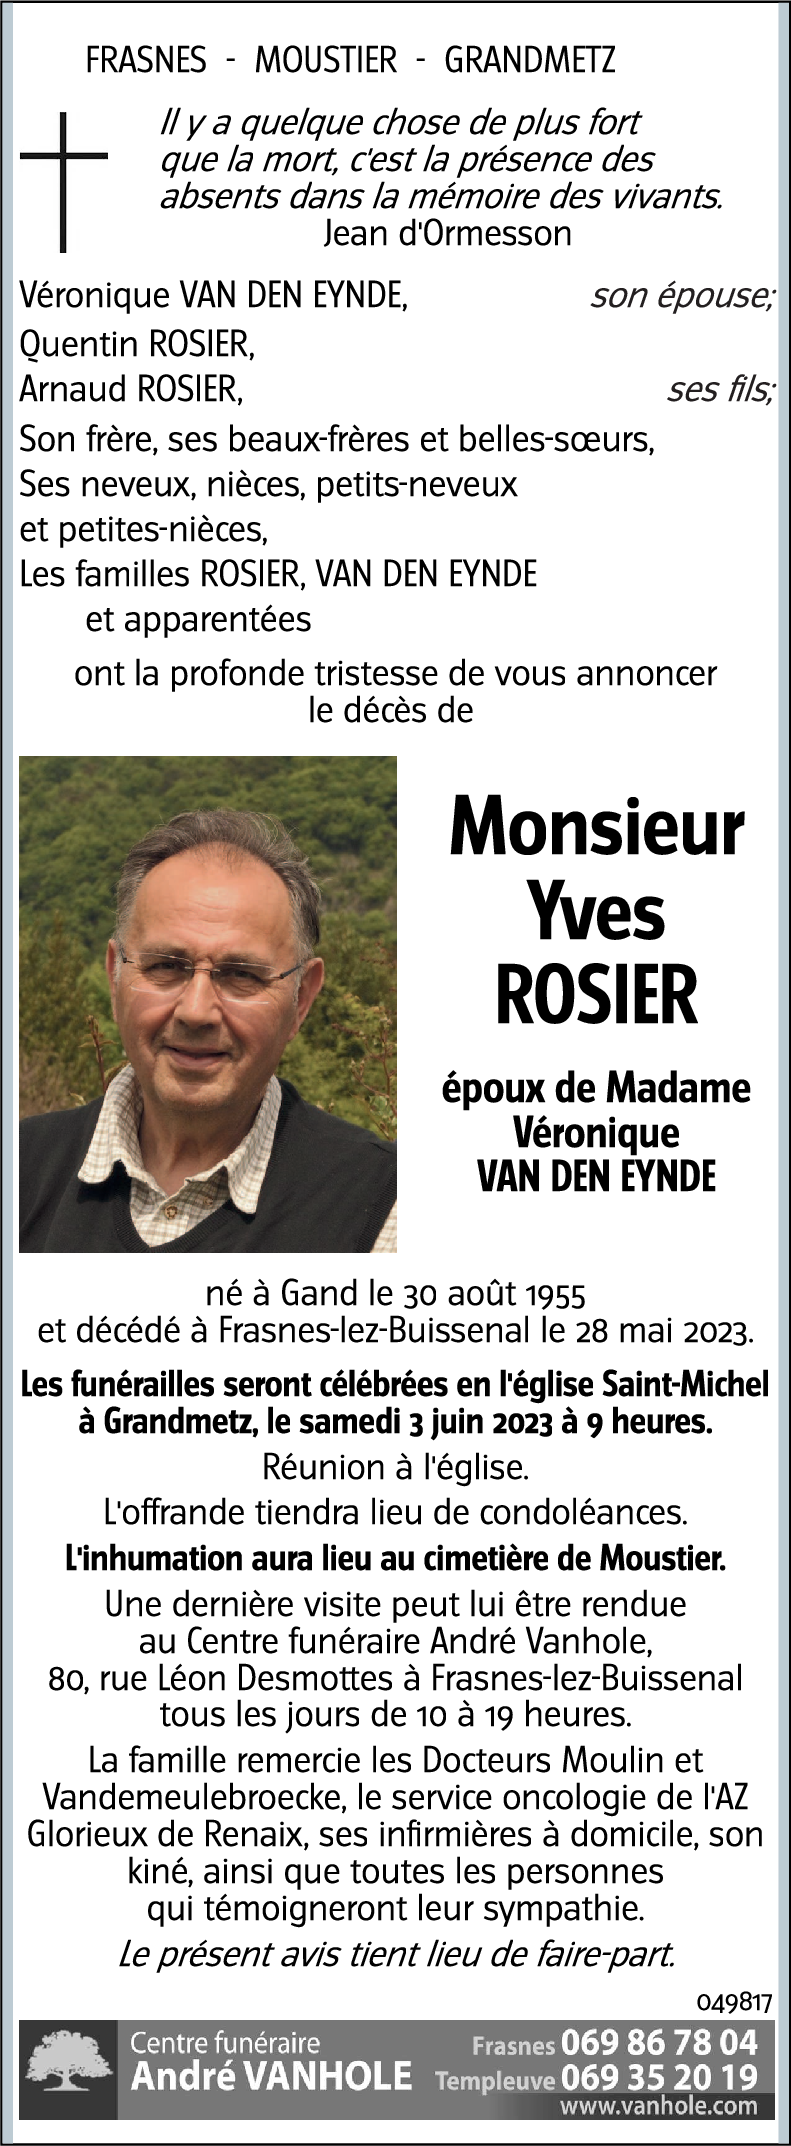 Yves ROSIER